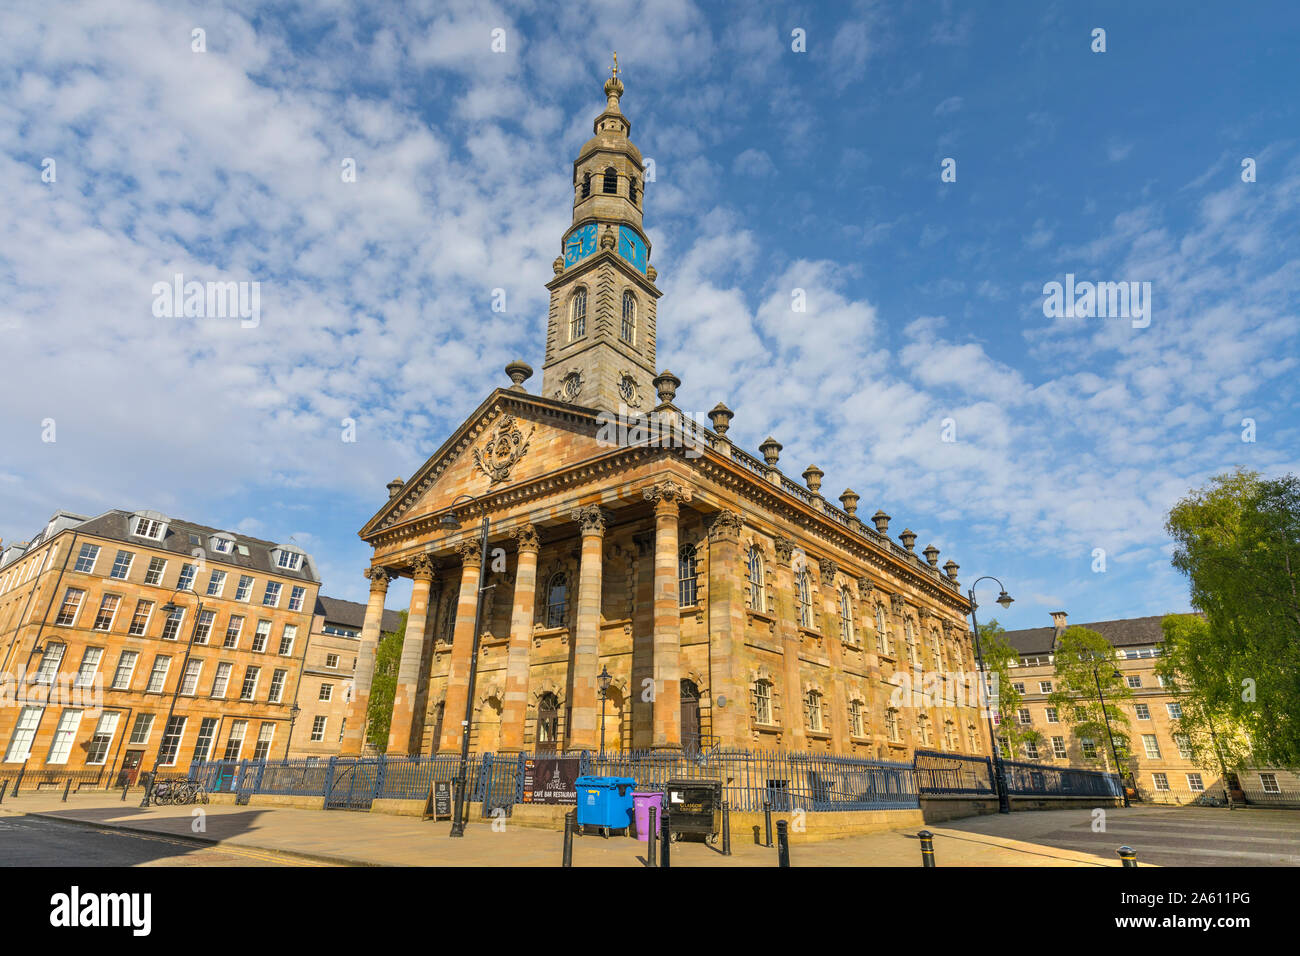 Saint Andrews dans le Square, Glasgow, Ecosse, Royaume-Uni, Europe Banque D'Images